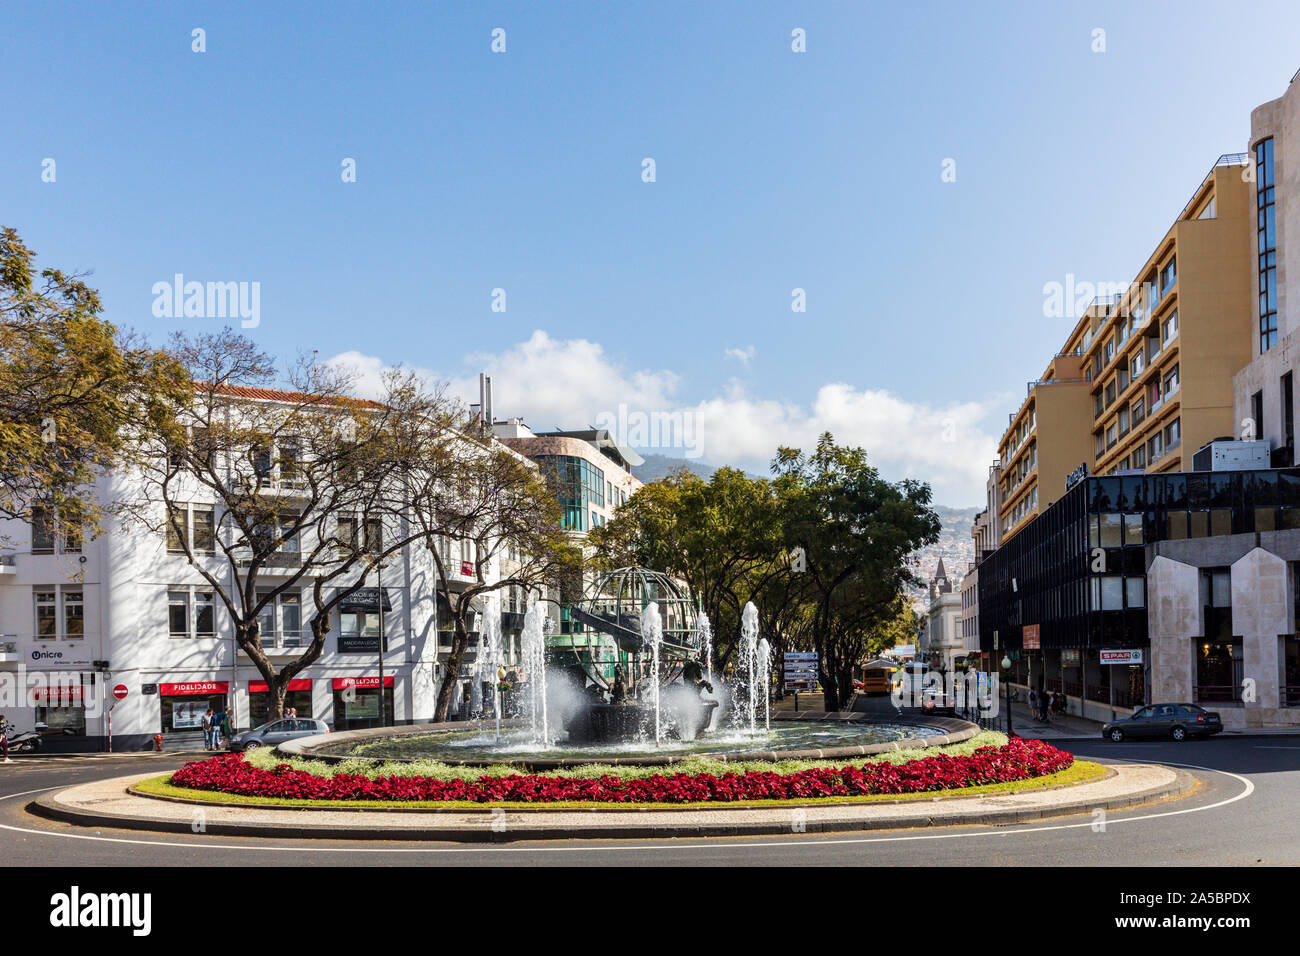 Rotonde de l'Infante, un rond-point avec des fontaines et des fleurs rouges à Funchal, Madeira, Portugal Banque D'Images